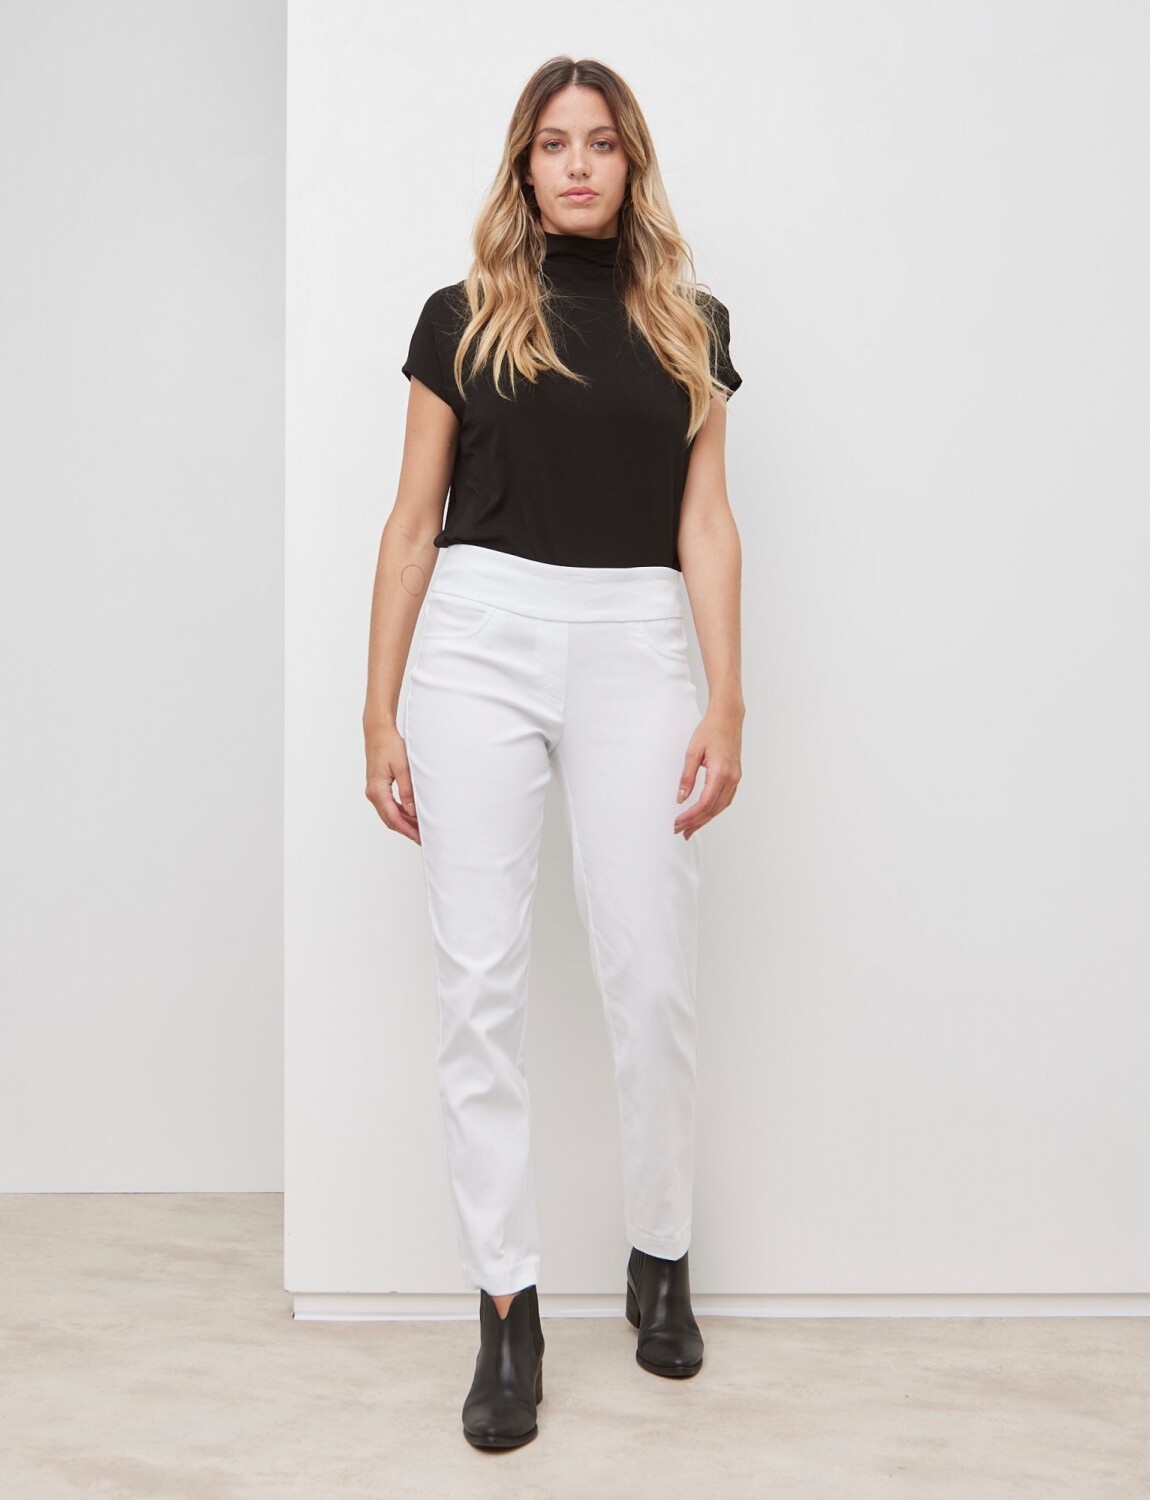 Pantalon Blanco — LA OPERA